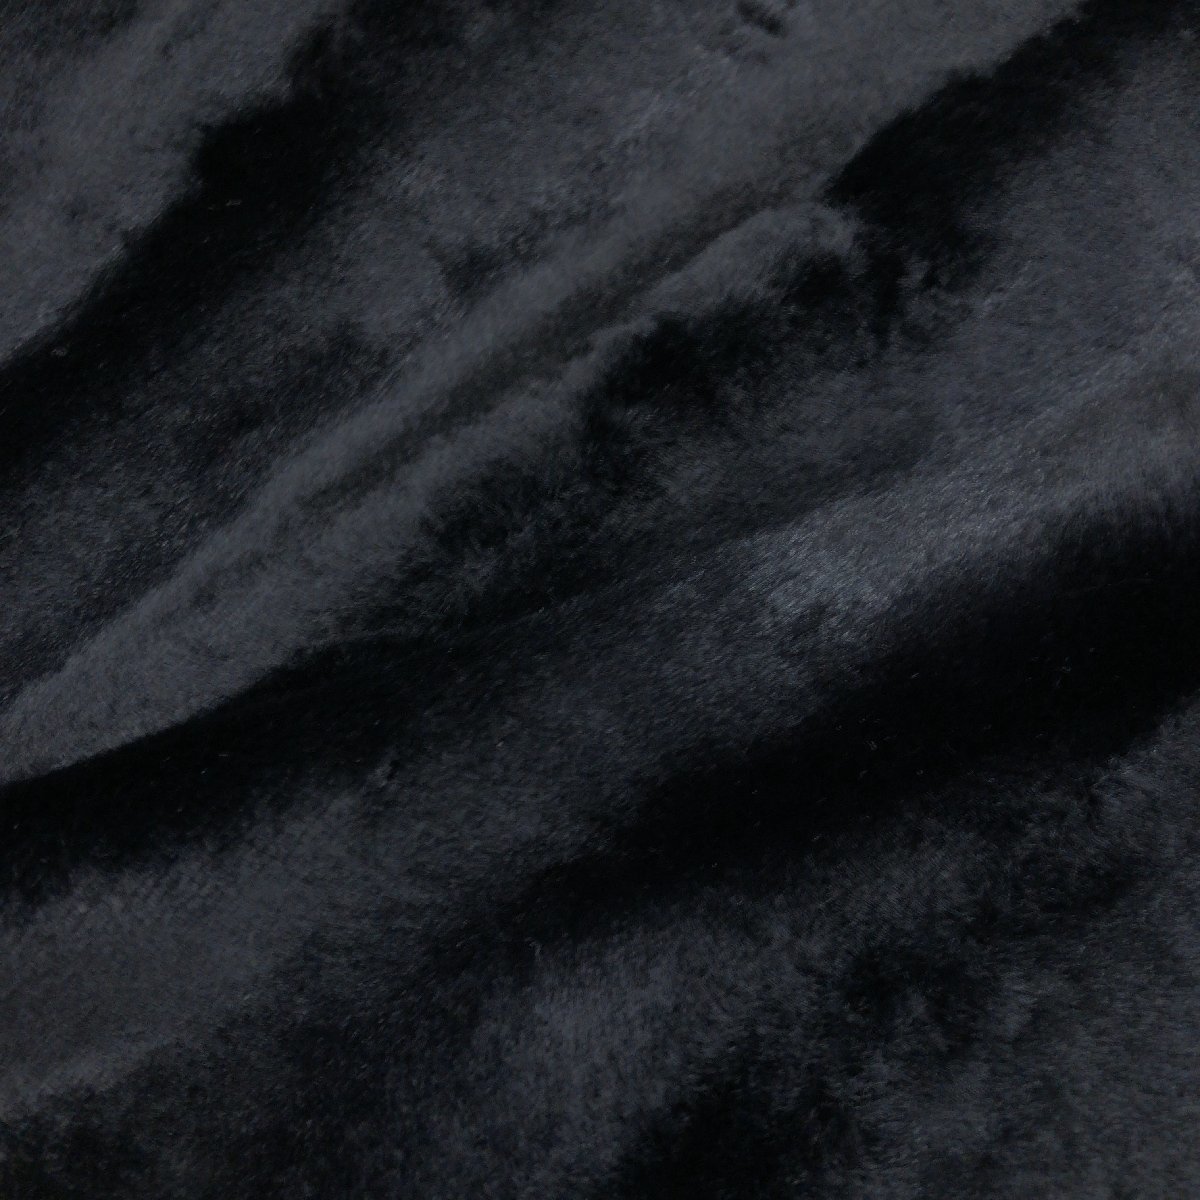 ◆Benaru WATAICHI ベナル 豪華フォックスファートリム エコファーコート 11(L) 黒 ブラック フェイクファー 毛皮 日本製 国内正規品 婦人_画像8